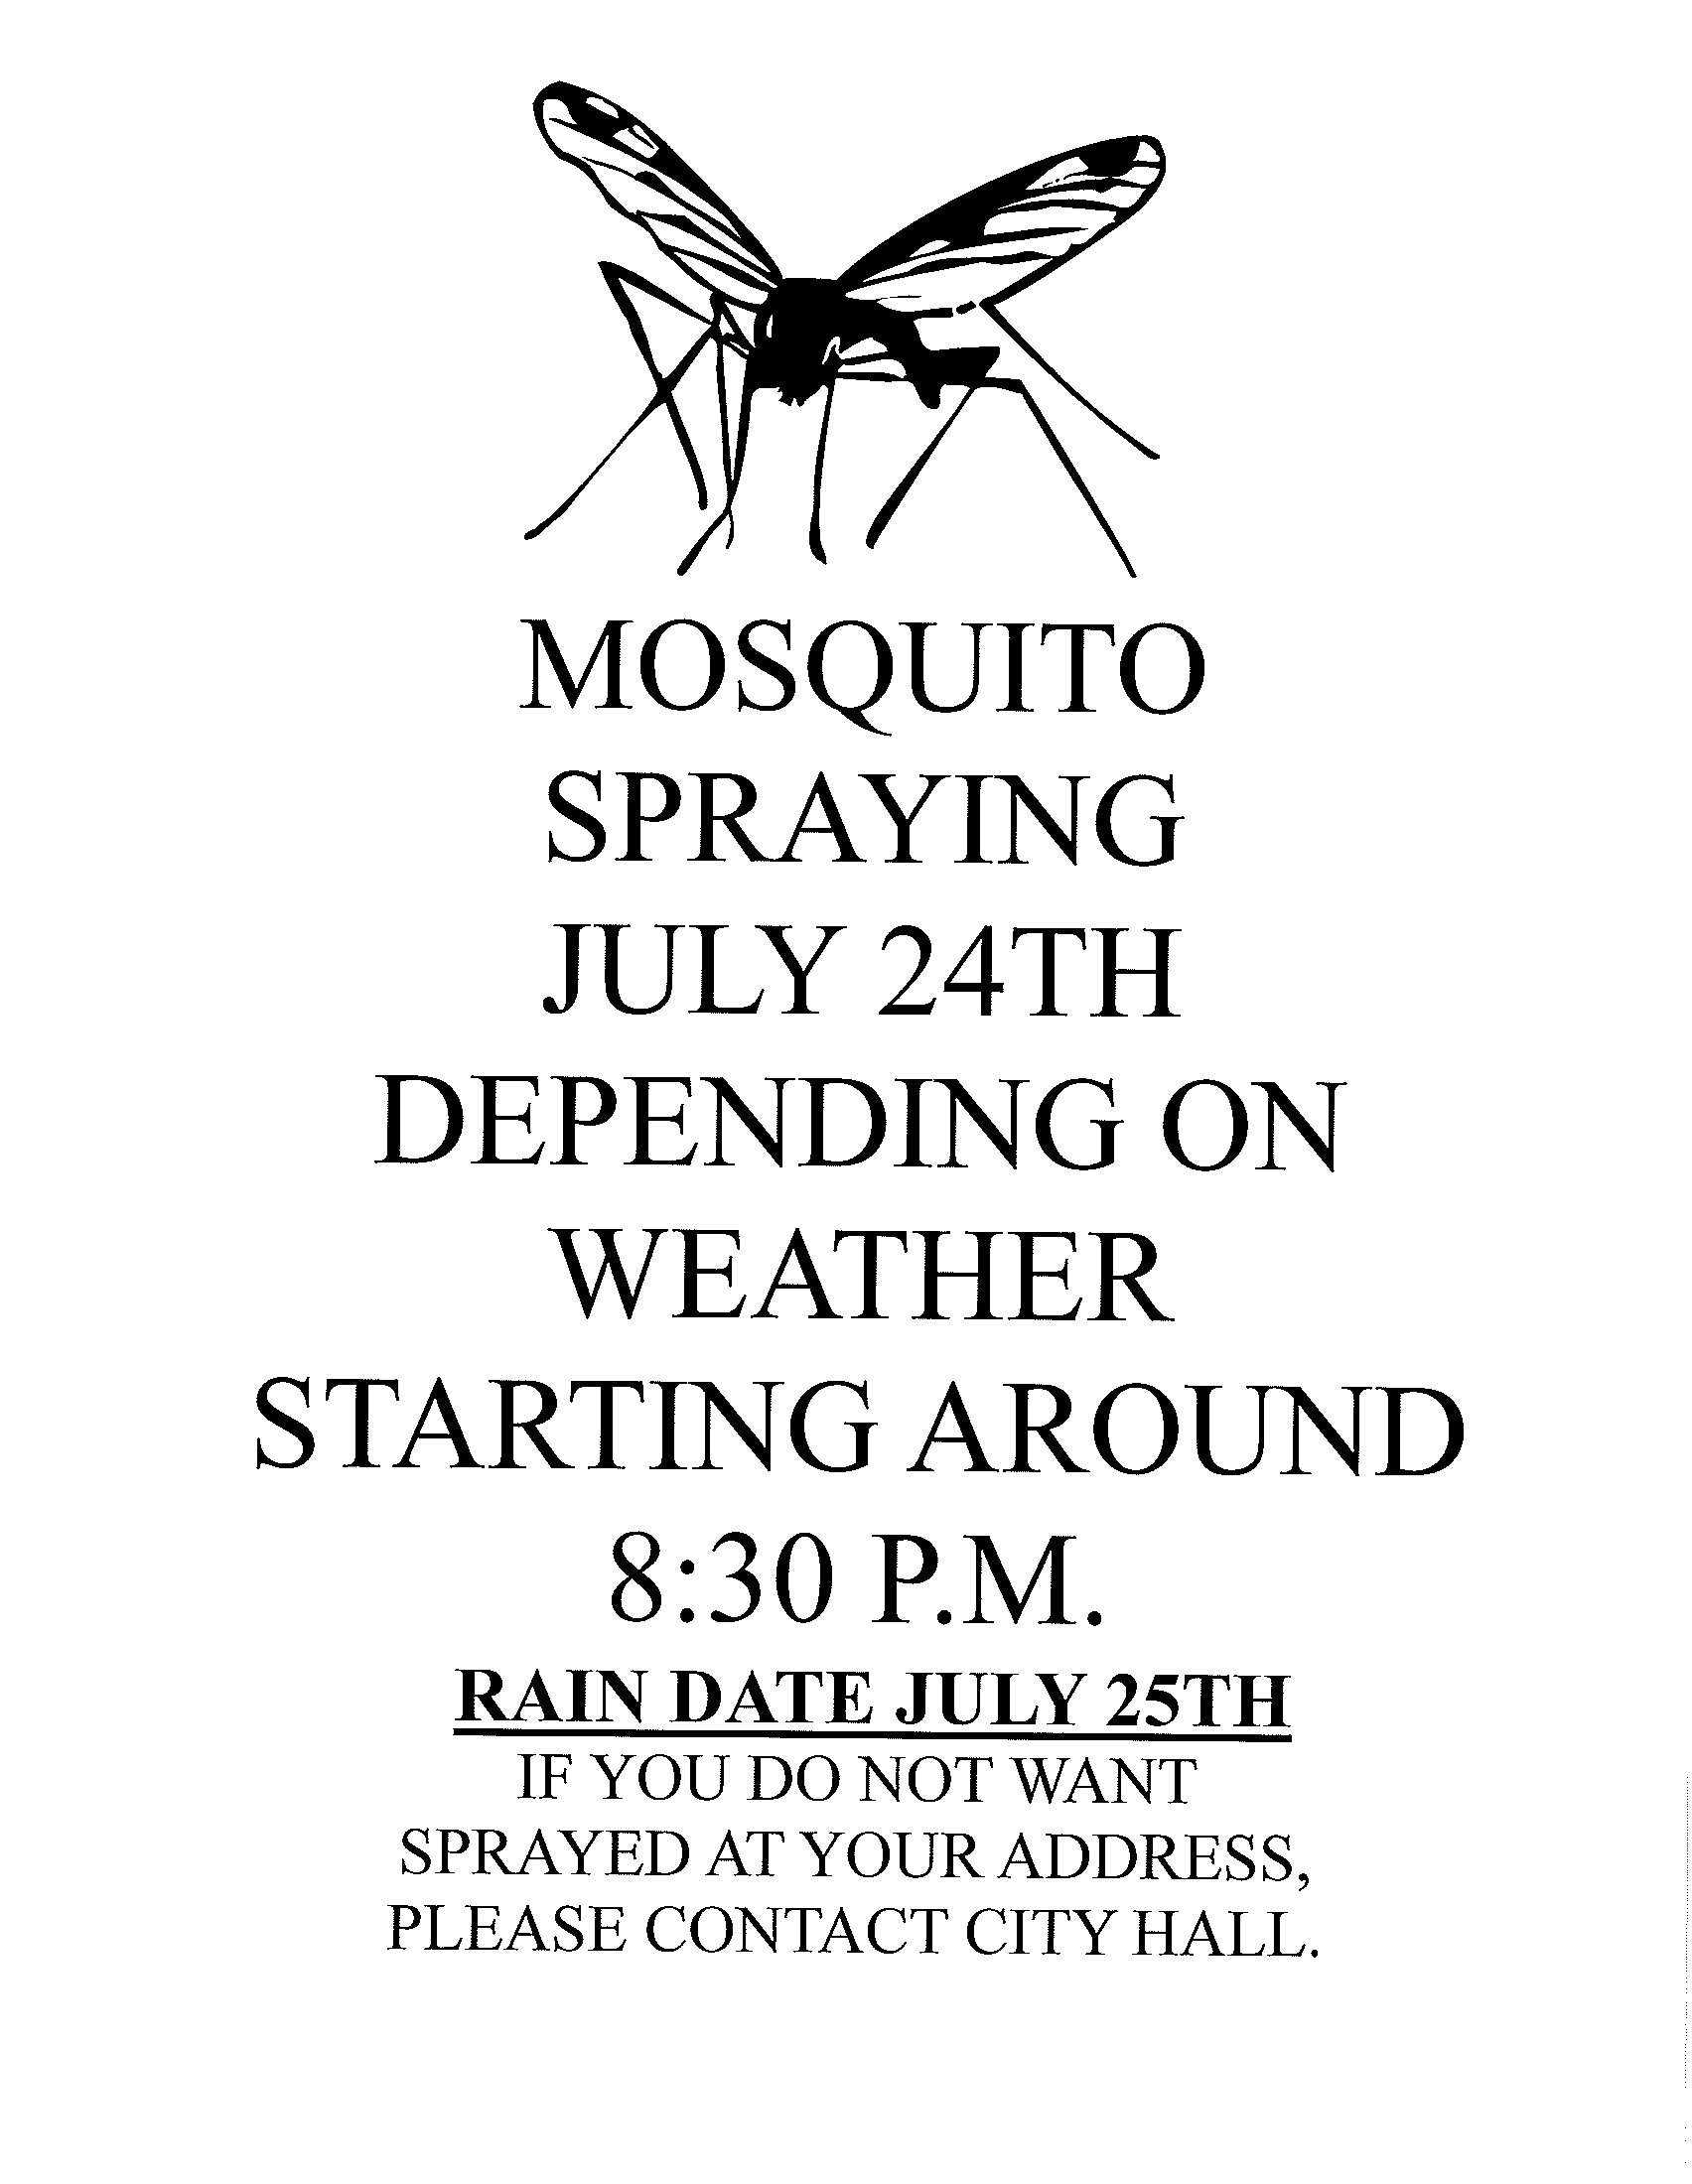 Mosquito spraying - RAIN DATE